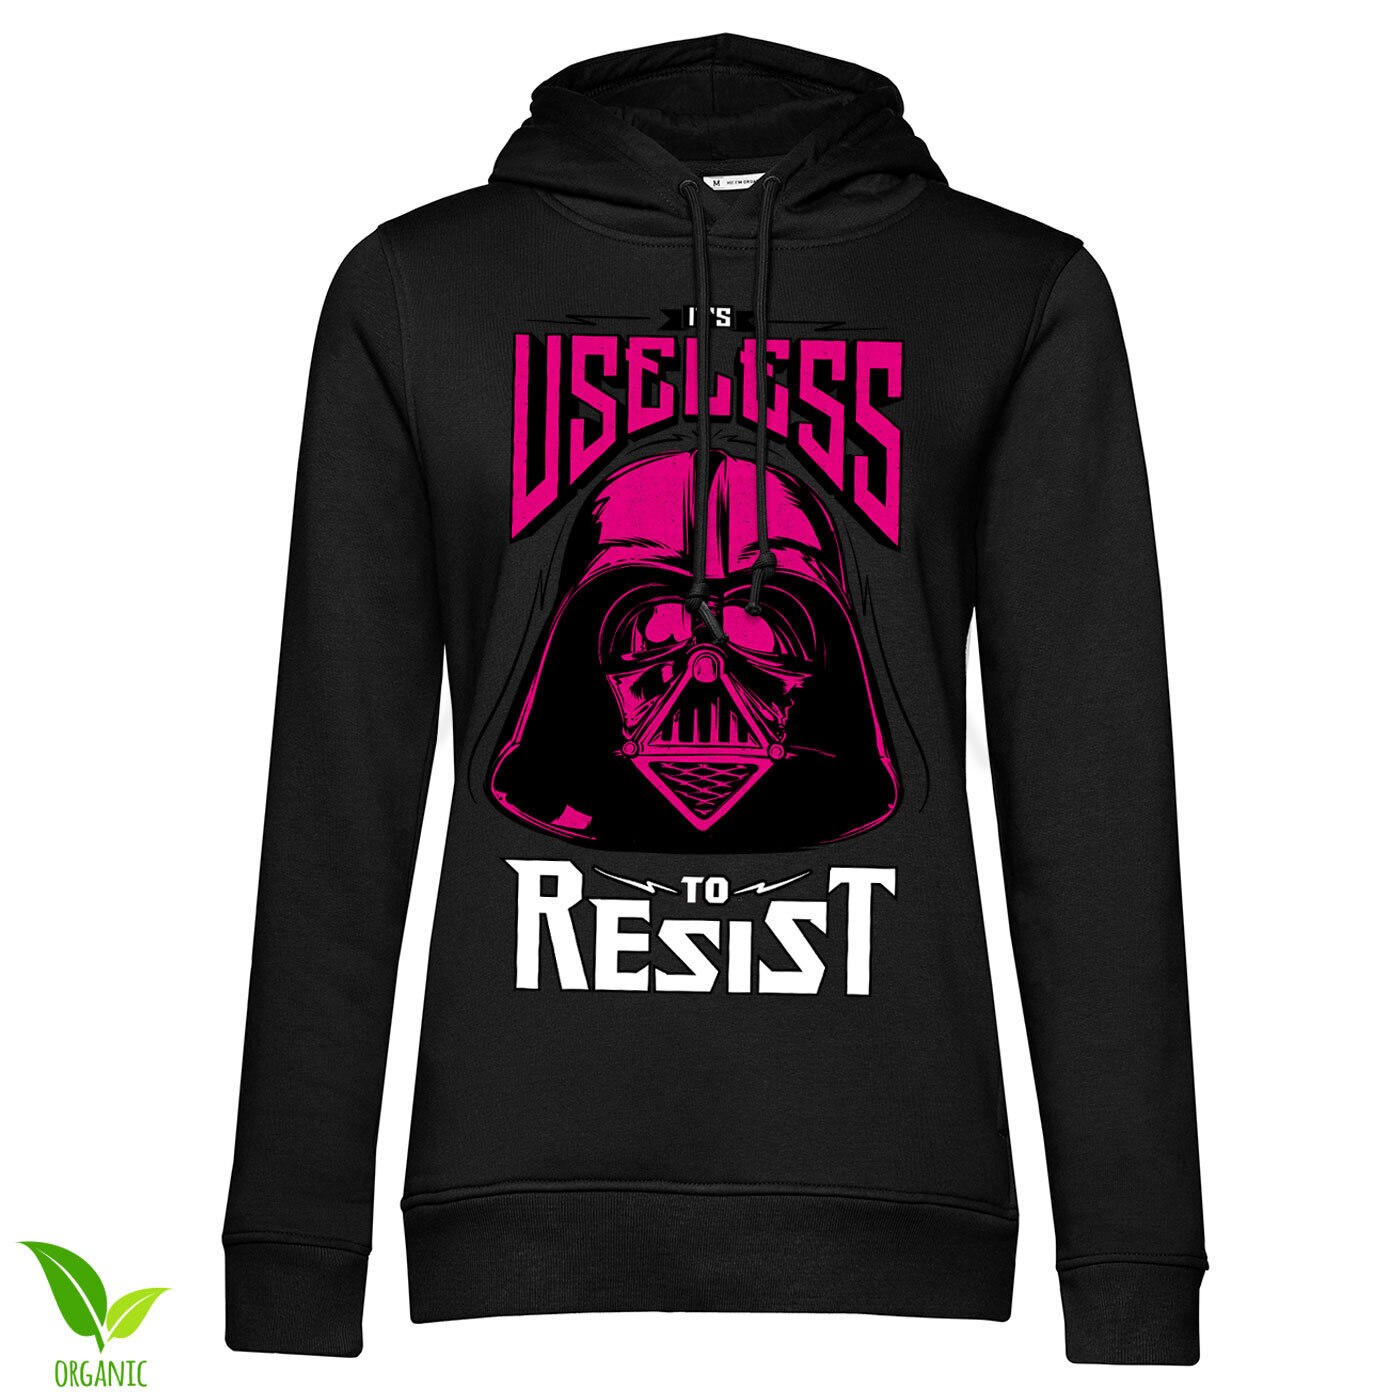 Vader - Useless To Resist Girls Hoodie